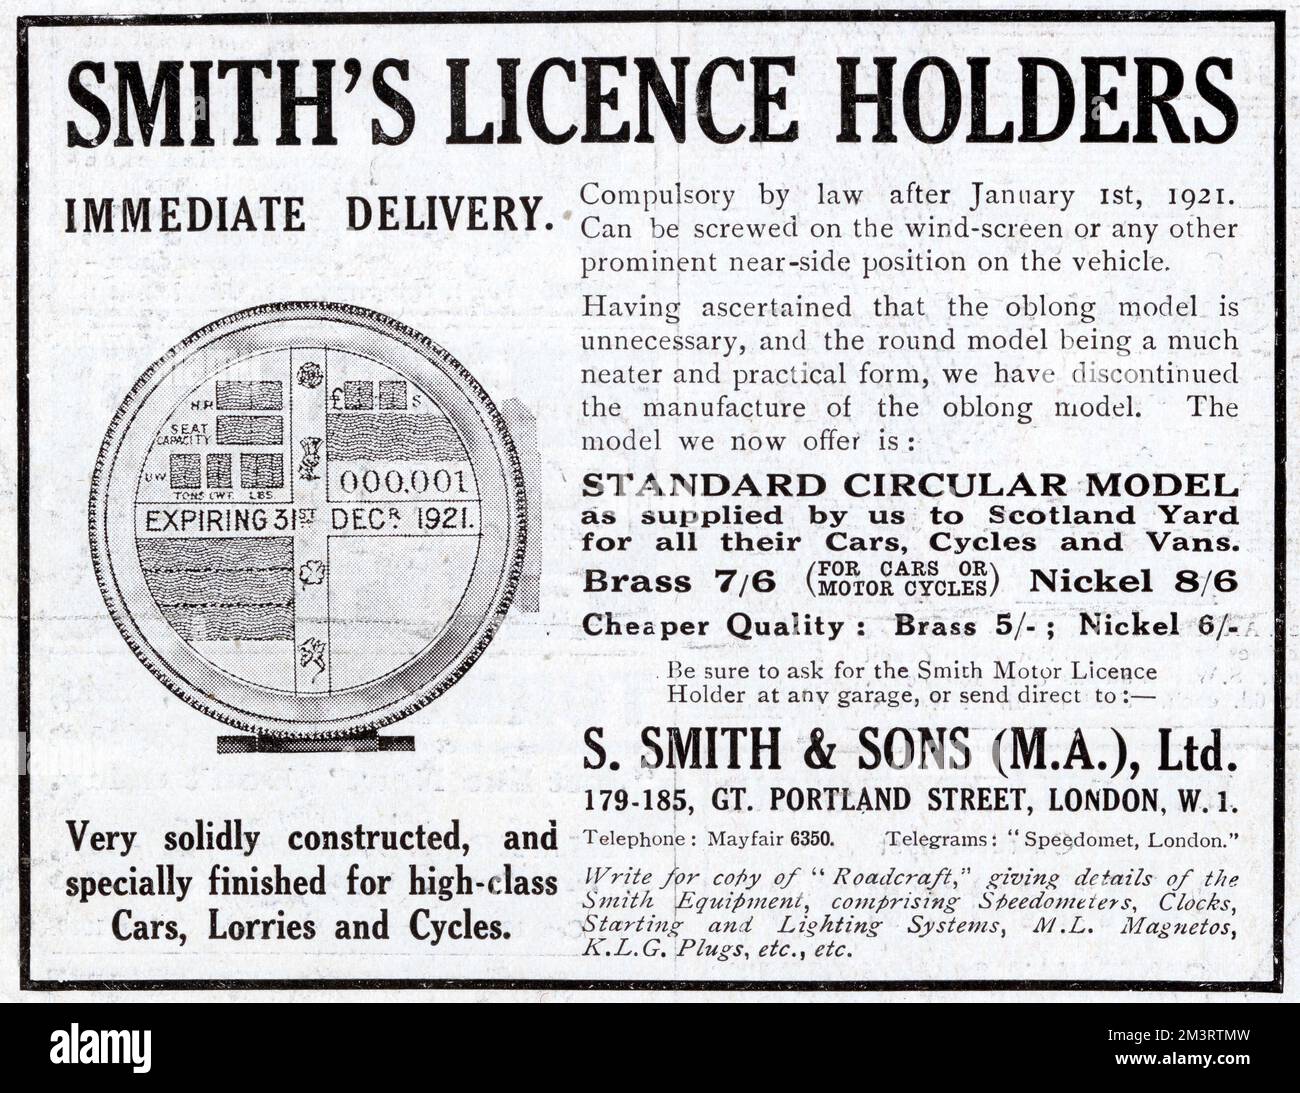 Publicité pour les titulaires de permis de conduire, faite par S. Smith & amp; Sons of Great Portland Street, Londres, dans un nouveau style circulaire la publicité indique que l'affichage d'un permis de conduire sera obligatoire après 1 janvier 1921. Date: 1920 Banque D'Images